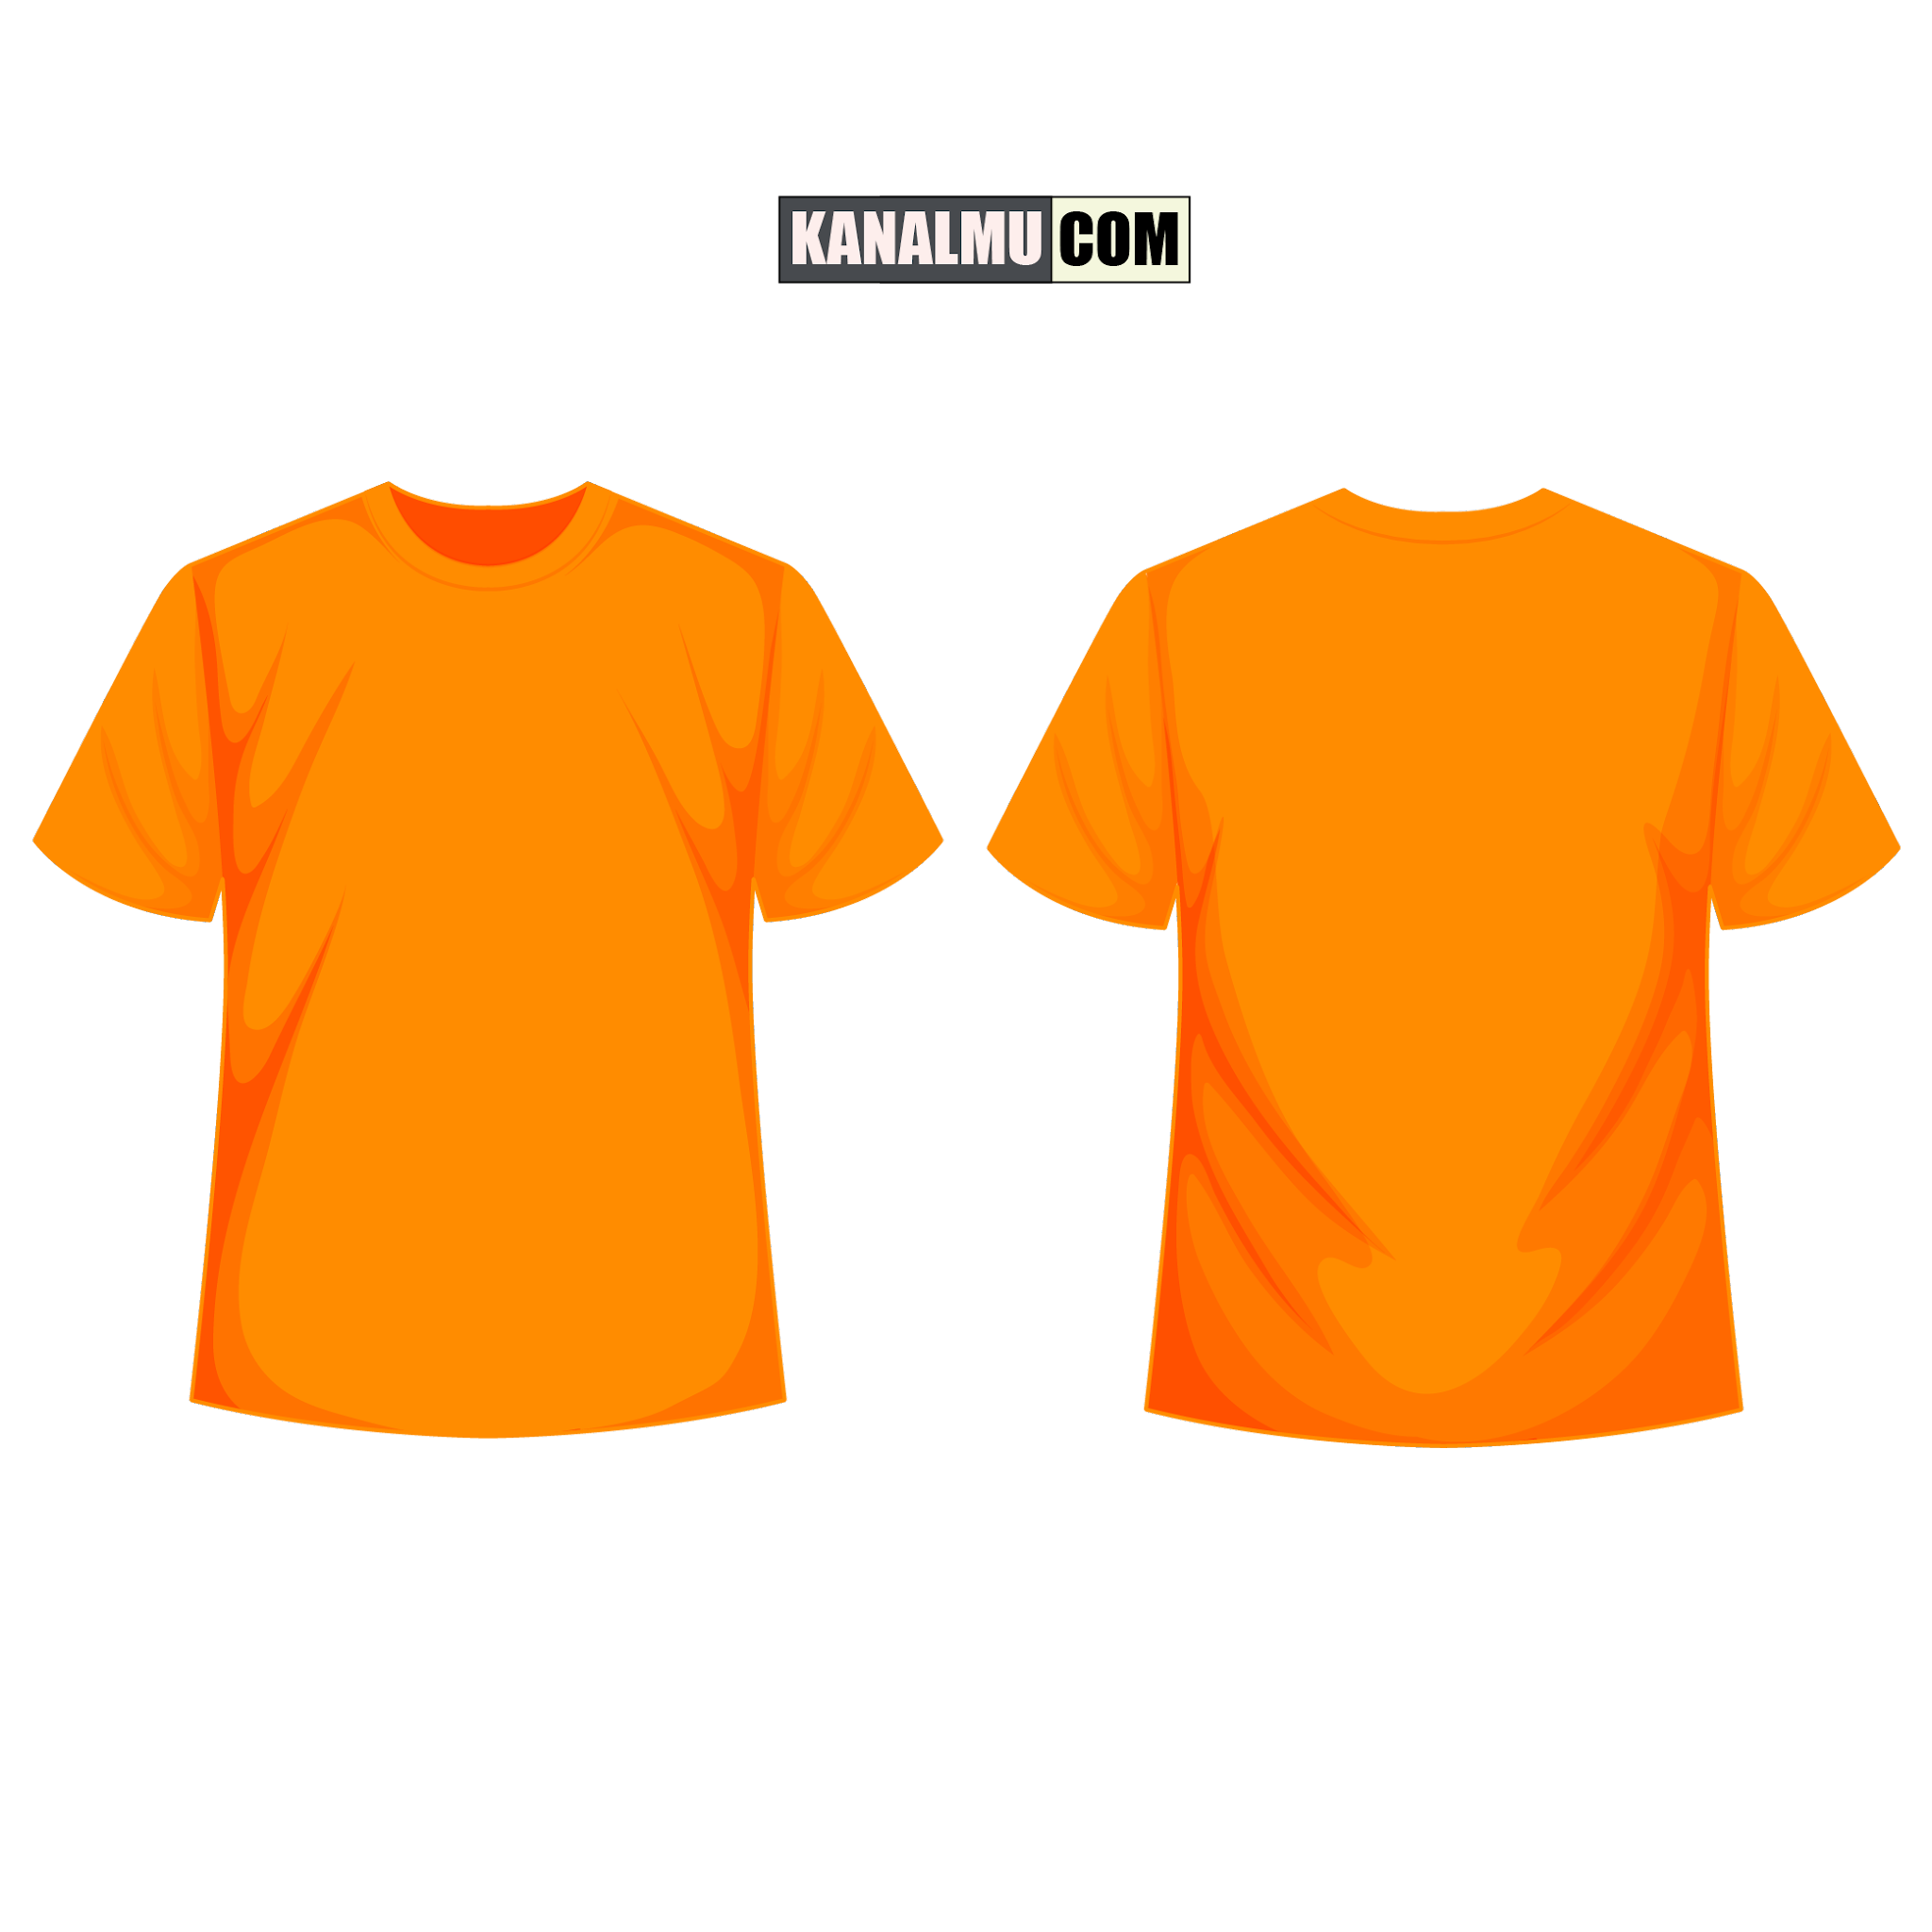 desain baju kaos orange
